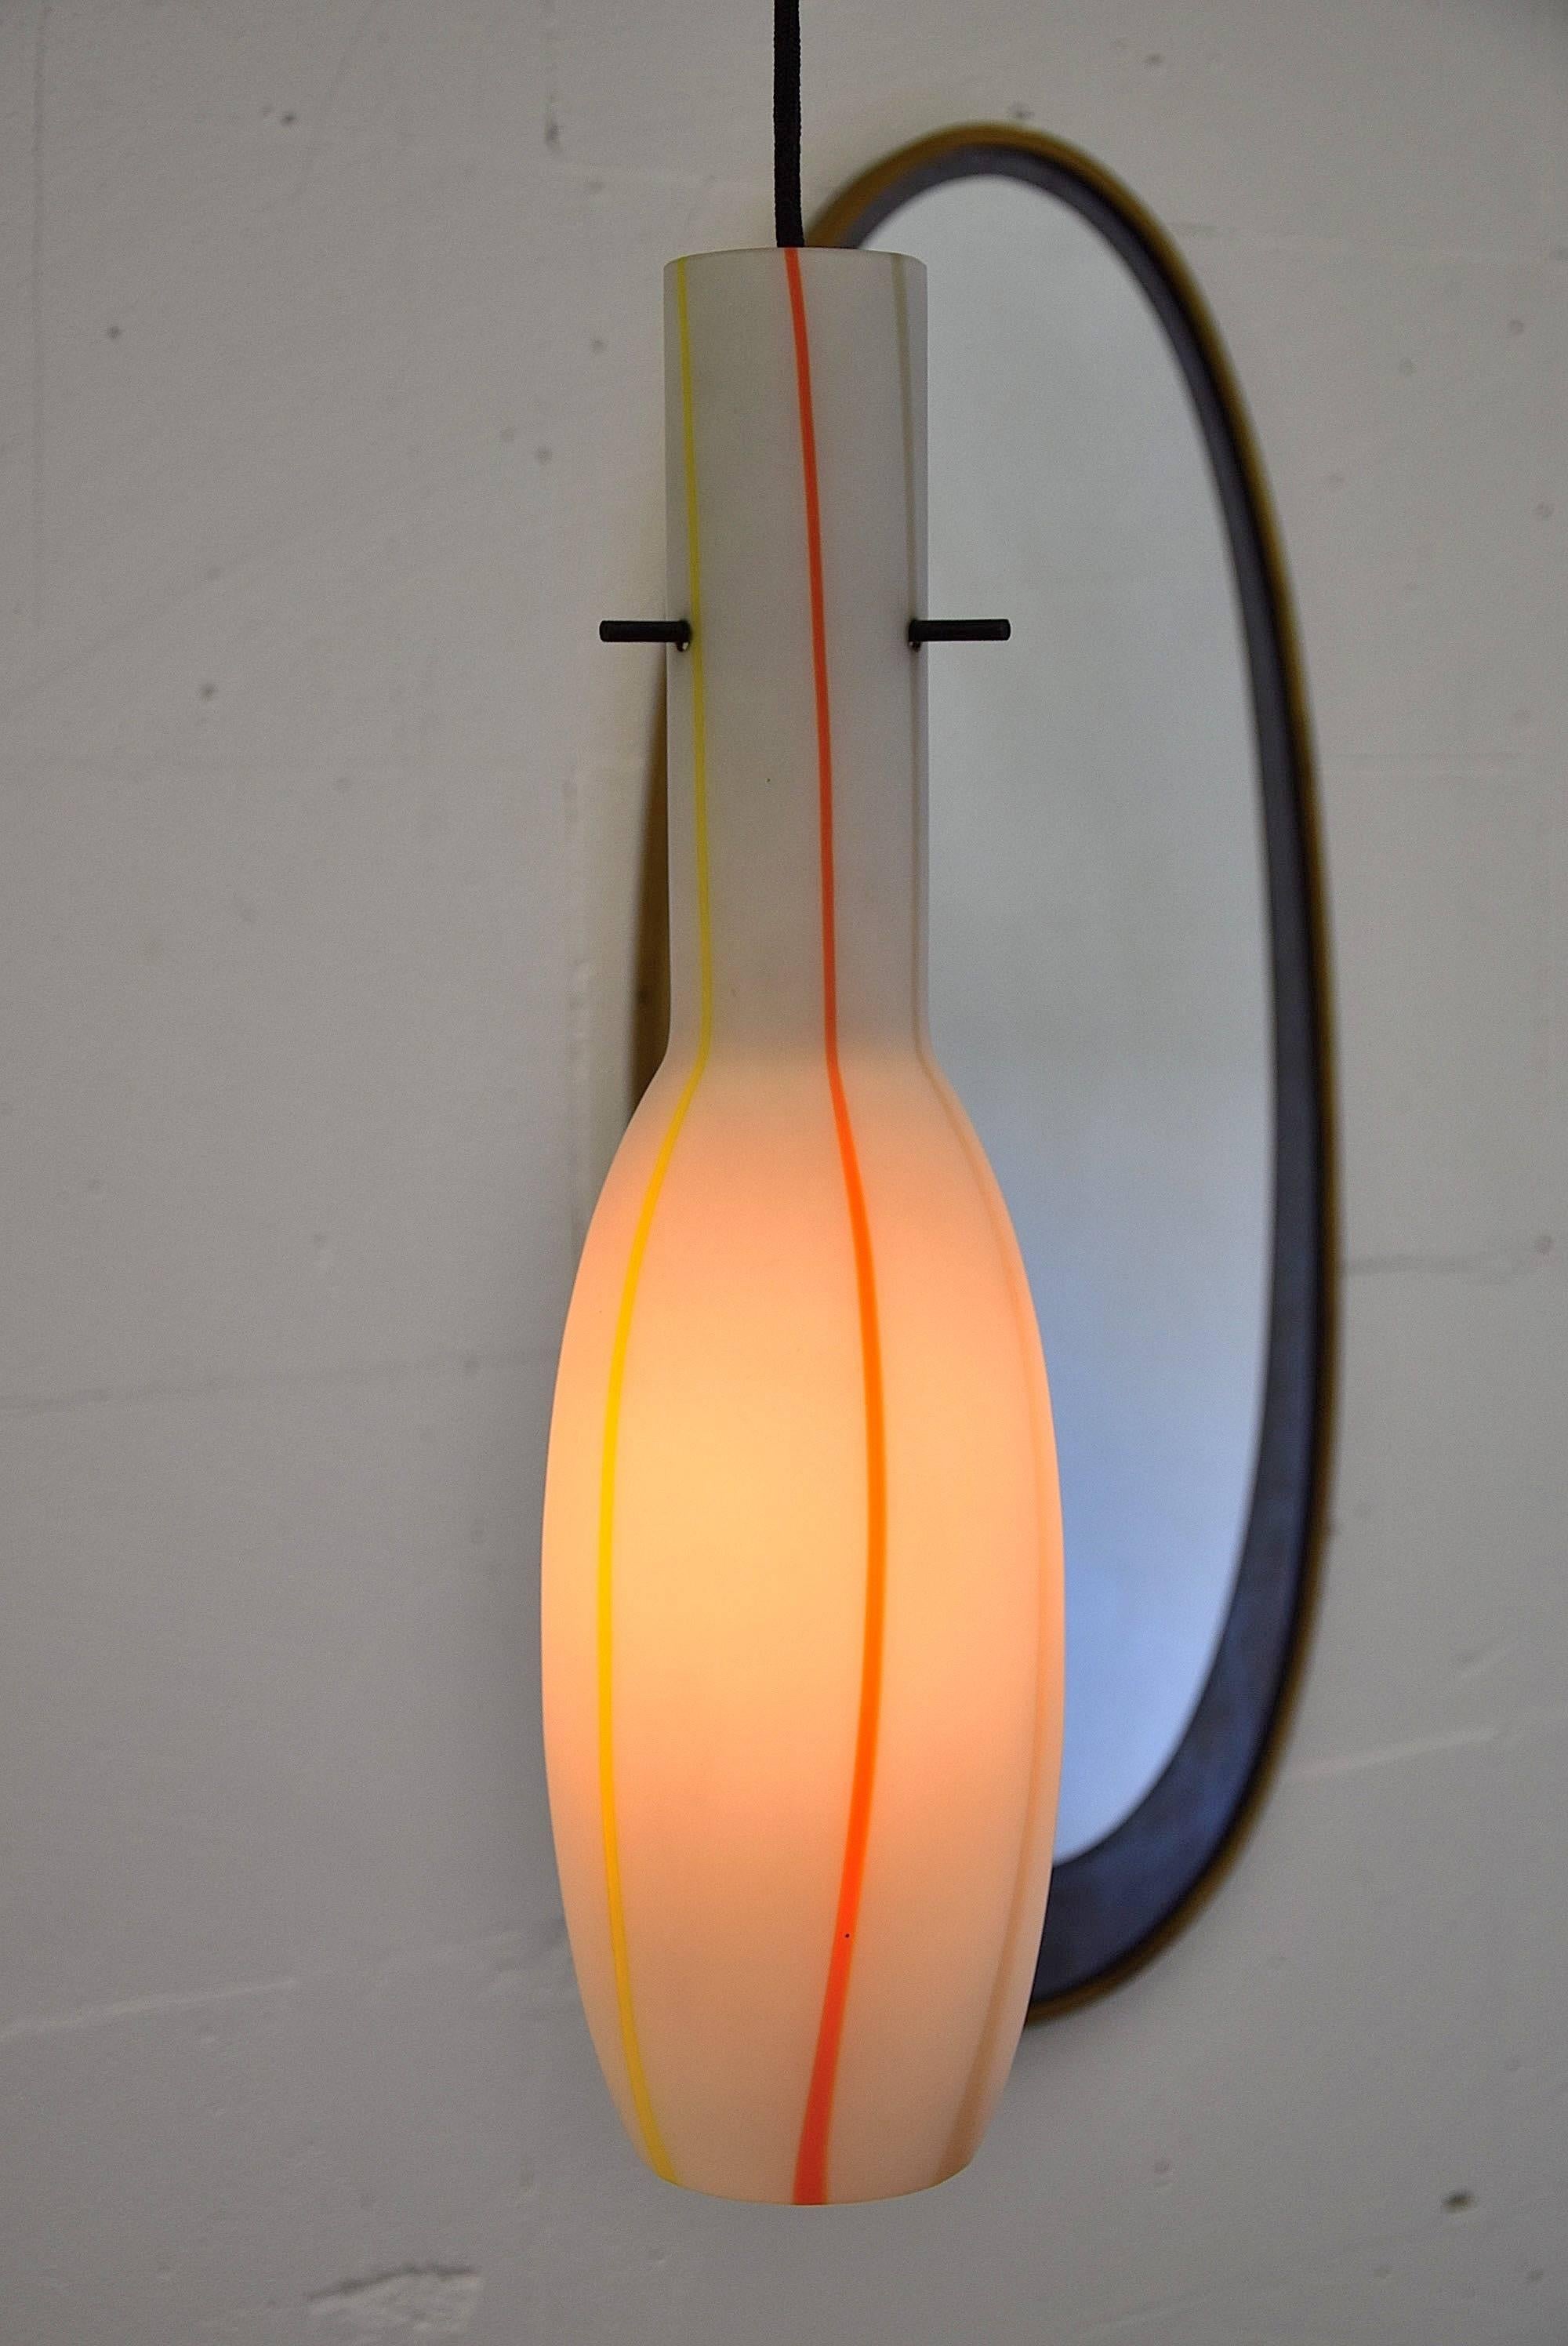 Zwei mundgeblasene, satinierte Pendelleuchten aus den späten 1950er Jahren, entworfen von Alessandro Pianon für Vistosi, Murano - Italien. Beide Lampen sind in perfektem Zustand. Abmessungen: H 47 x T 13 cm. Jede Leuchte ist mit einer einzigen